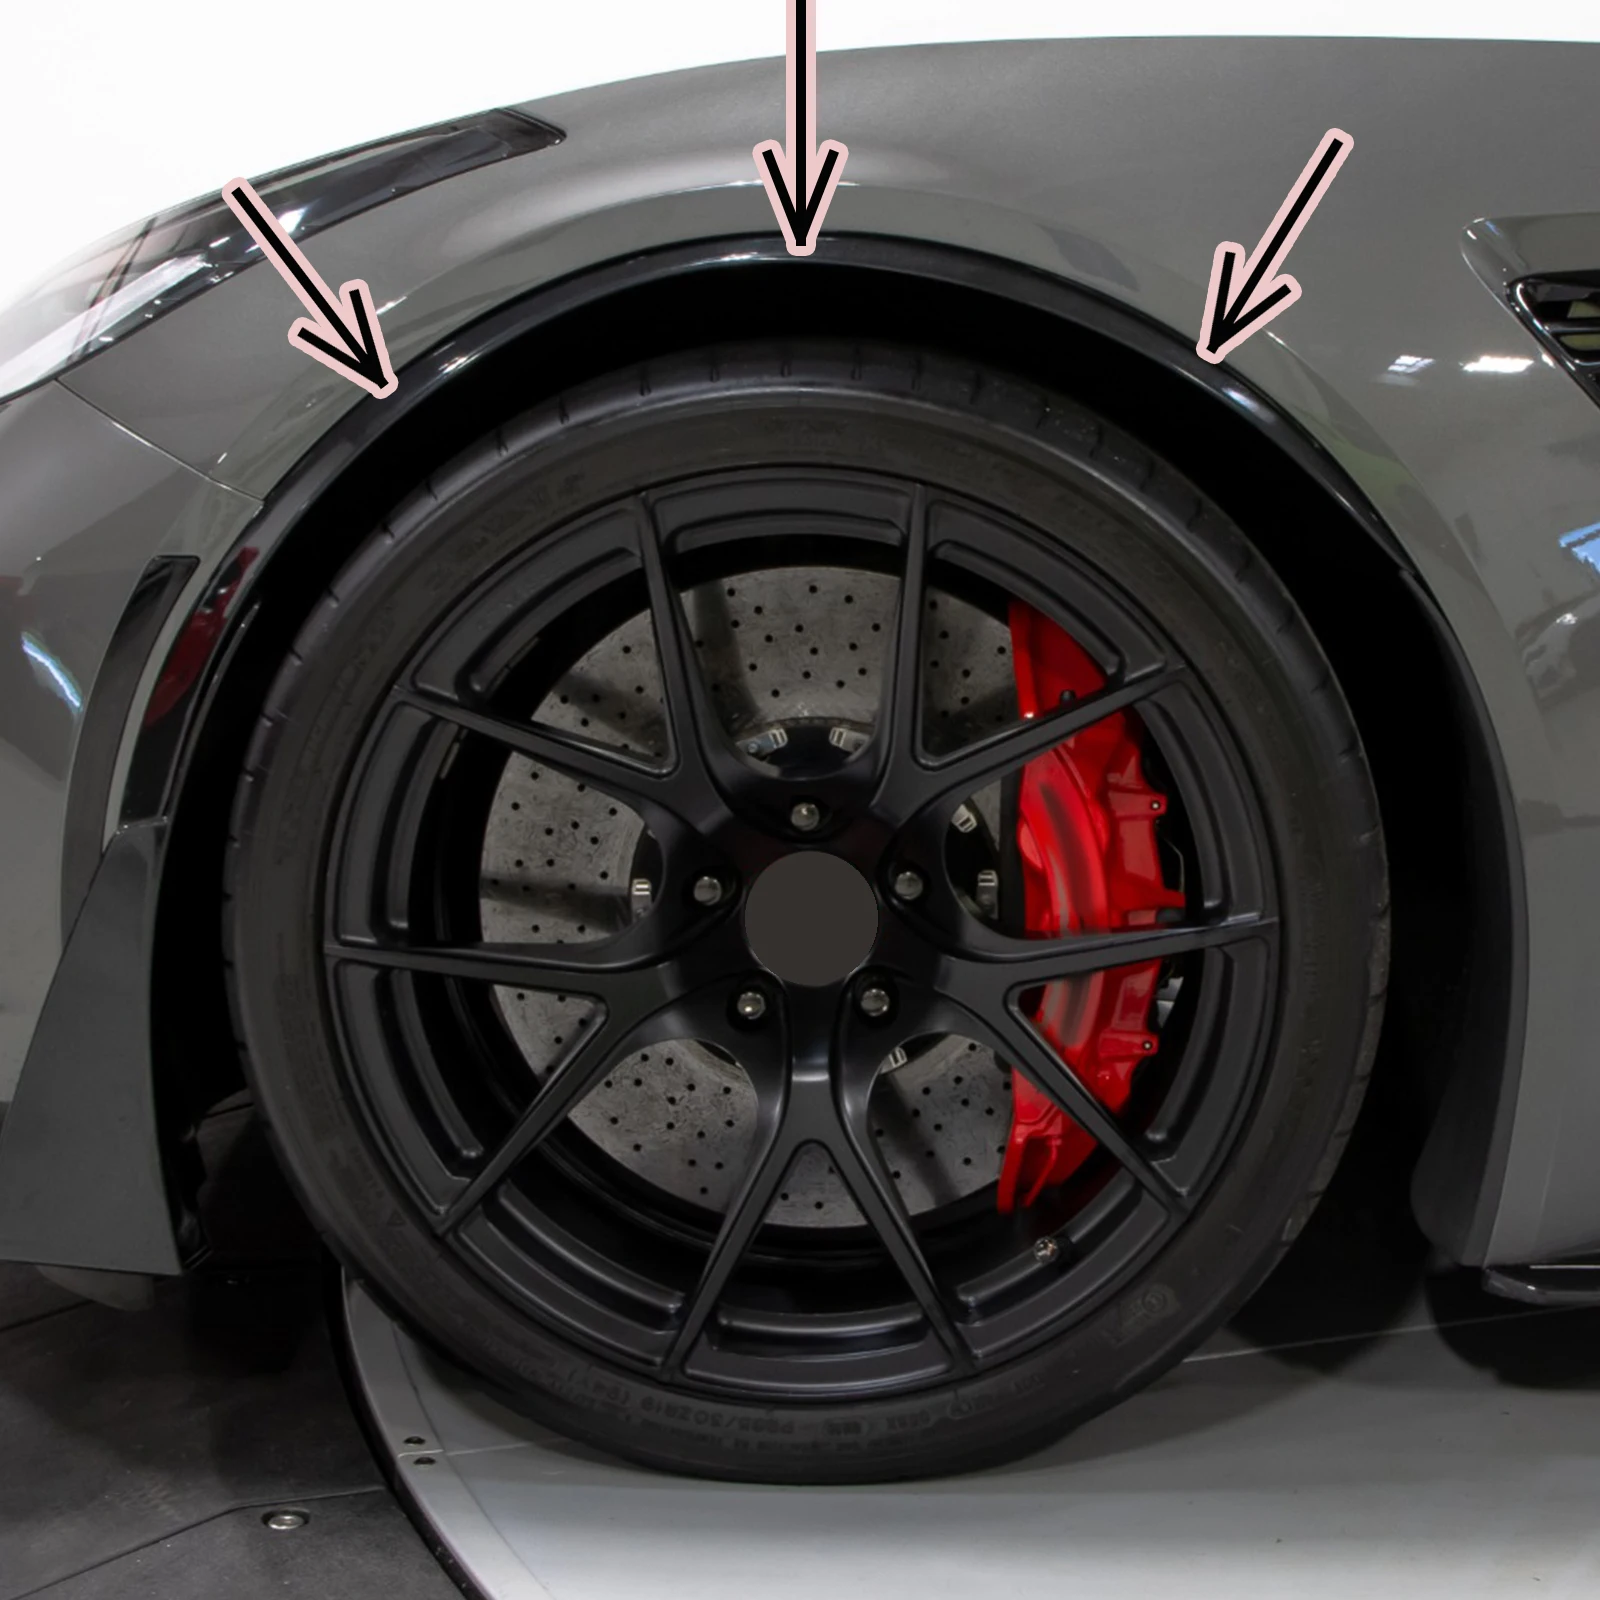 Guarnição da roda dianteira do carro para Corvette C7, aparência de fibra de carbono, preto brilhante, arcos Fender, flares de moldagem, estilo GM, 2014-2019, 2 peças